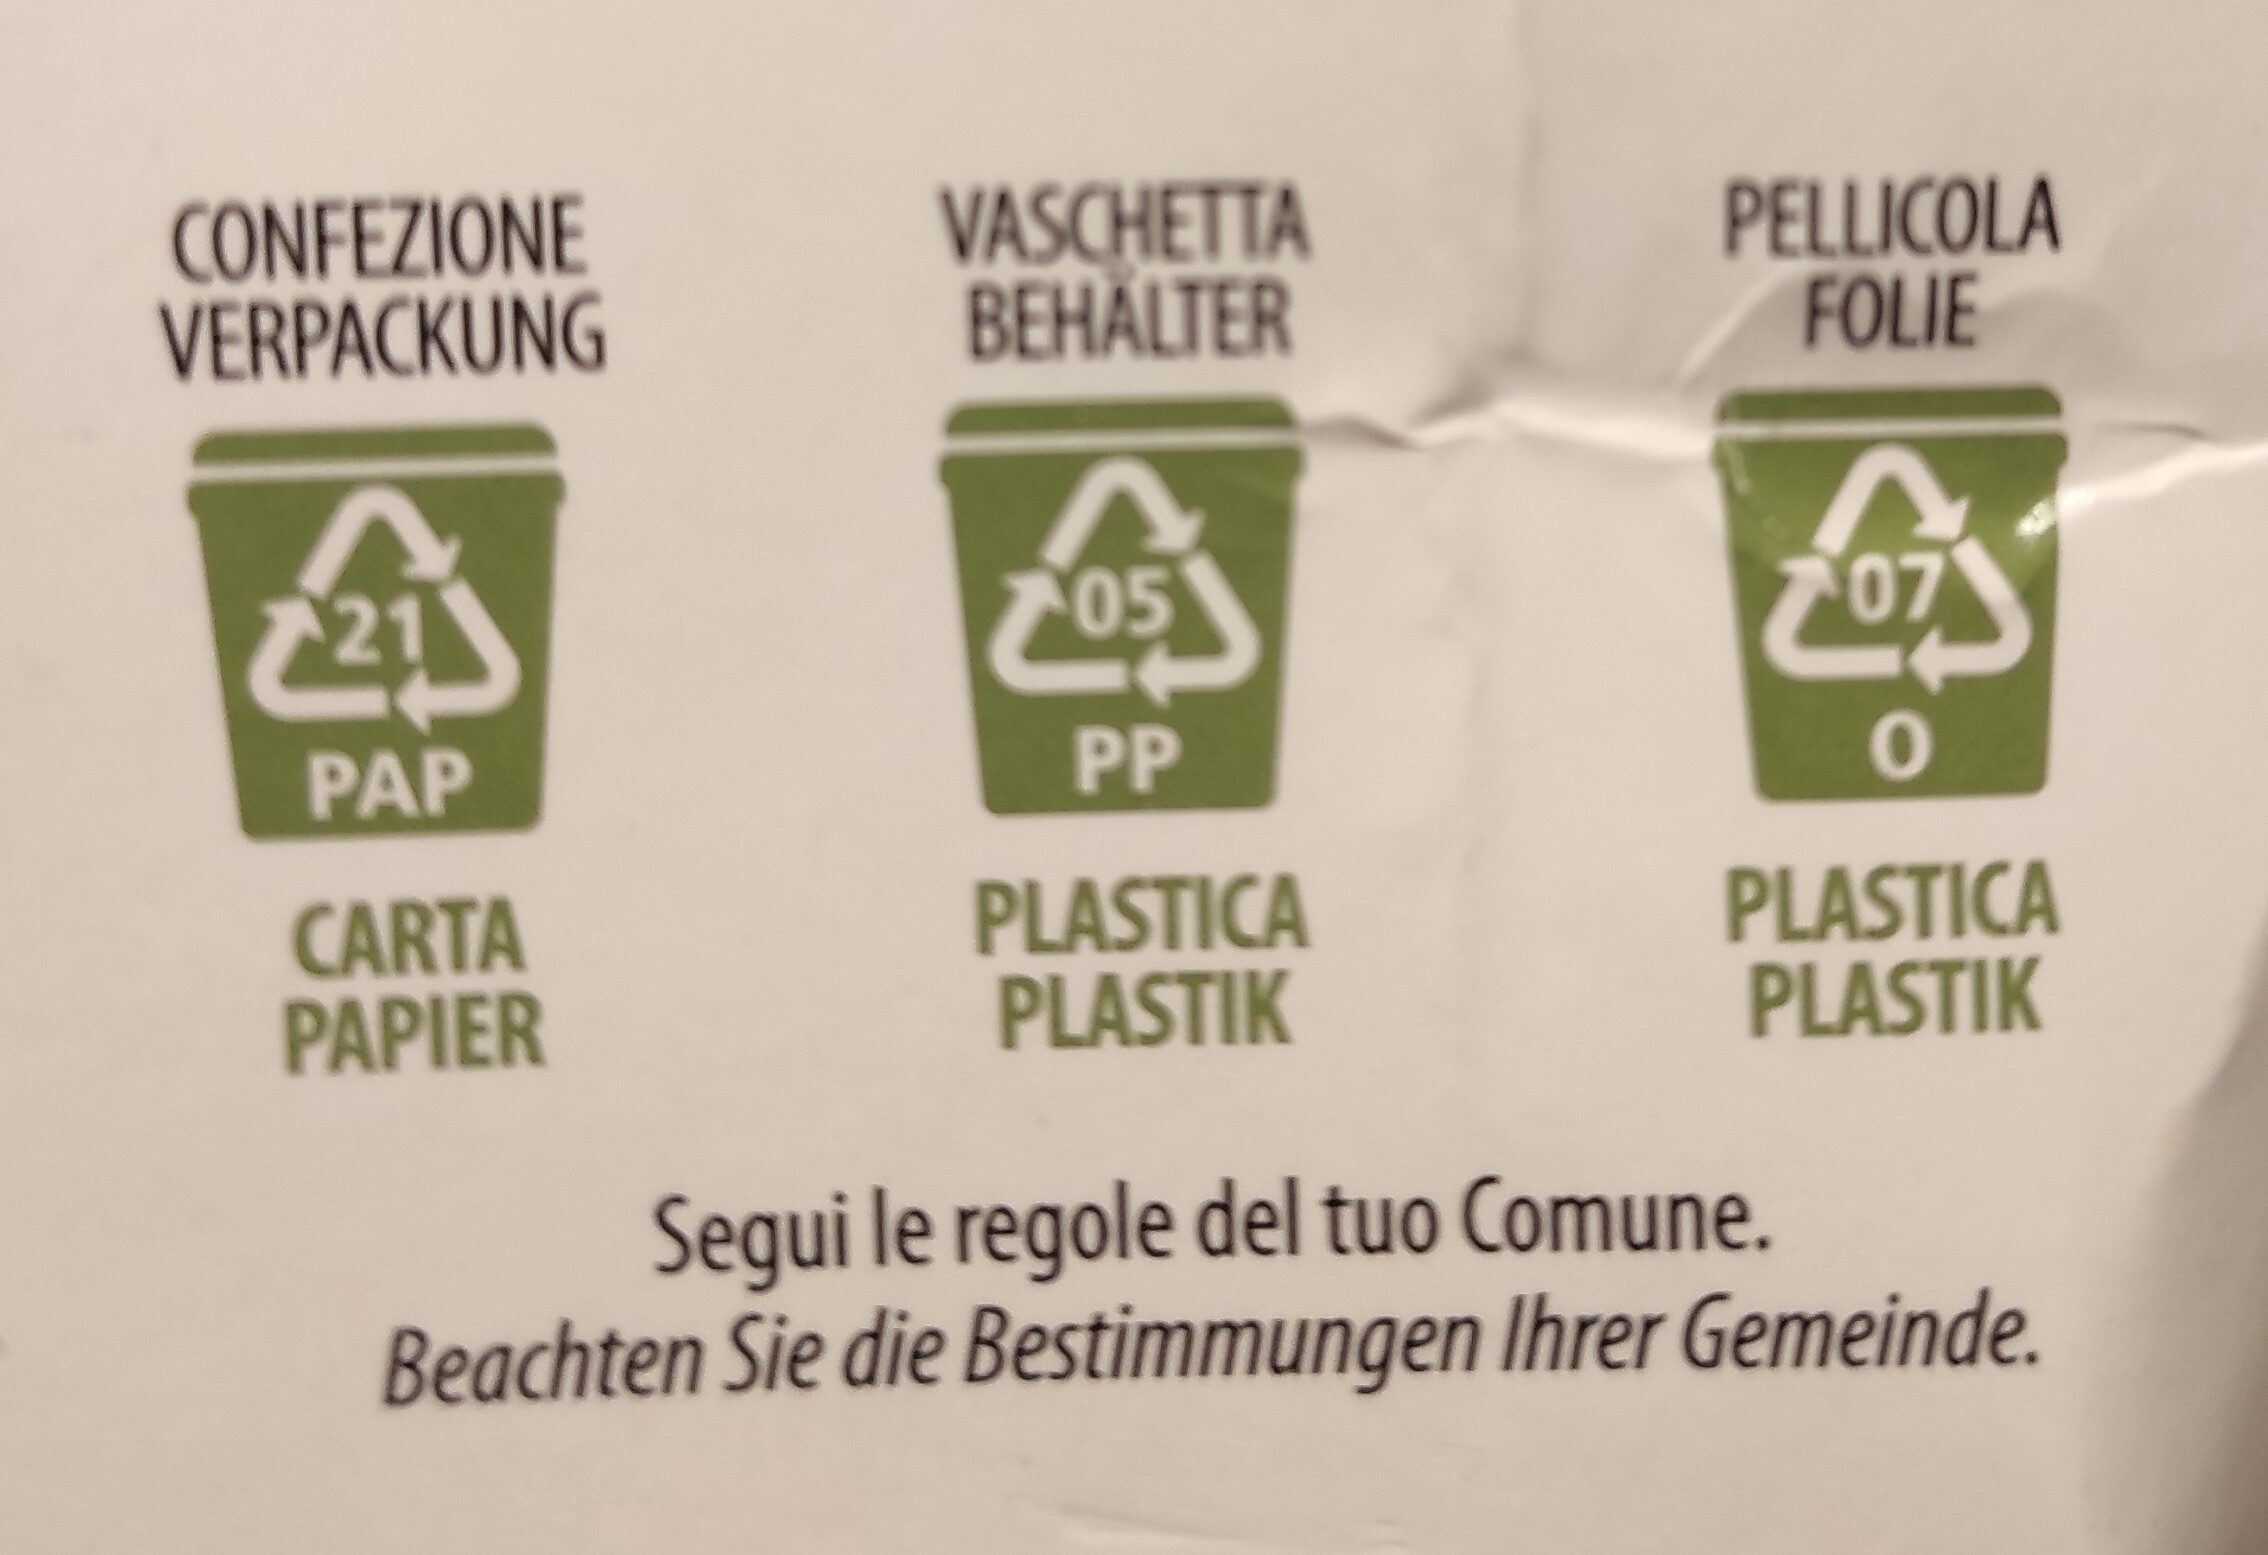 Polpettine di ceci - Istruzioni per il riciclaggio e/o informazioni sull'imballaggio